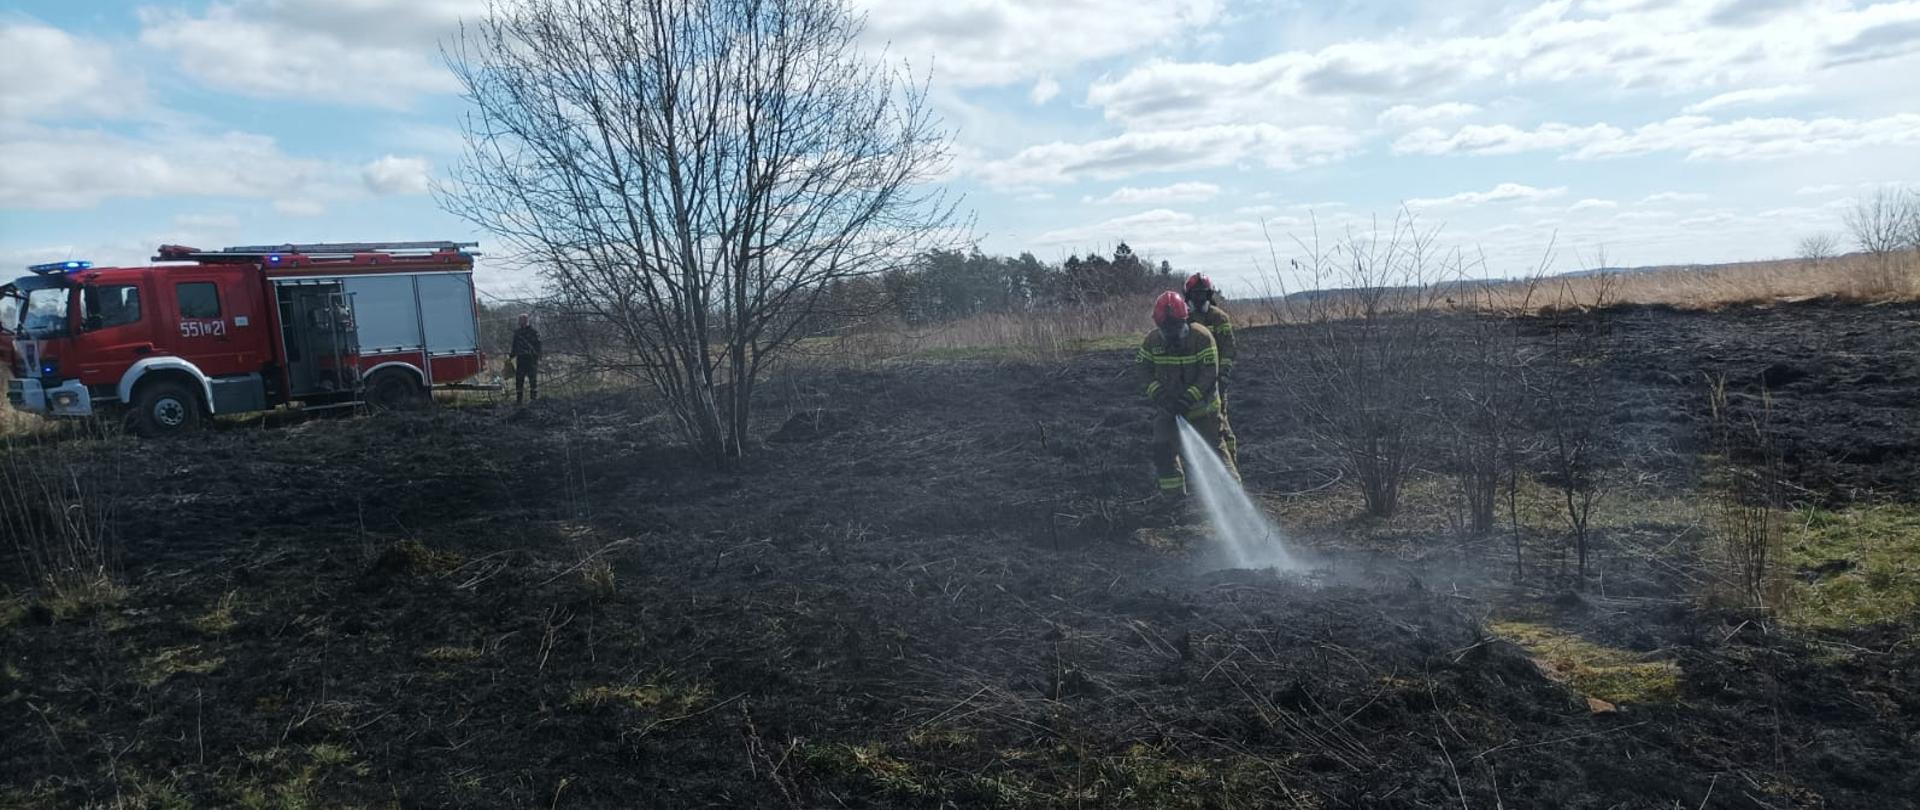 Zdjęcie przedstawia pożar trawy, który gaszą dwaj strażacy wodą. za nimi znajduje się czerwony wóż strażacki